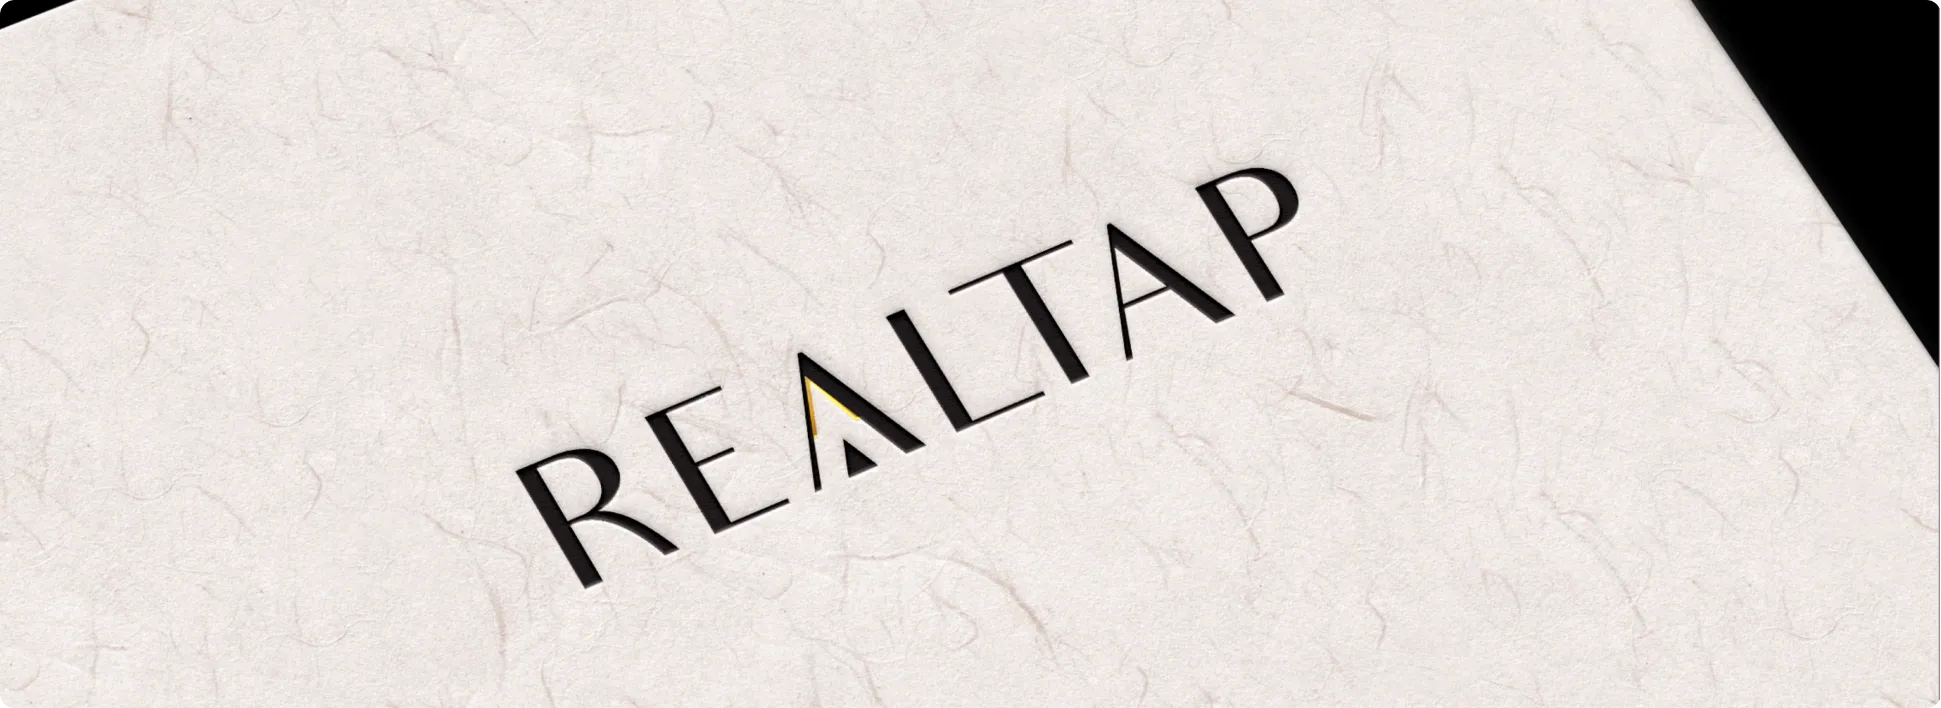 brandemic-realtap-4